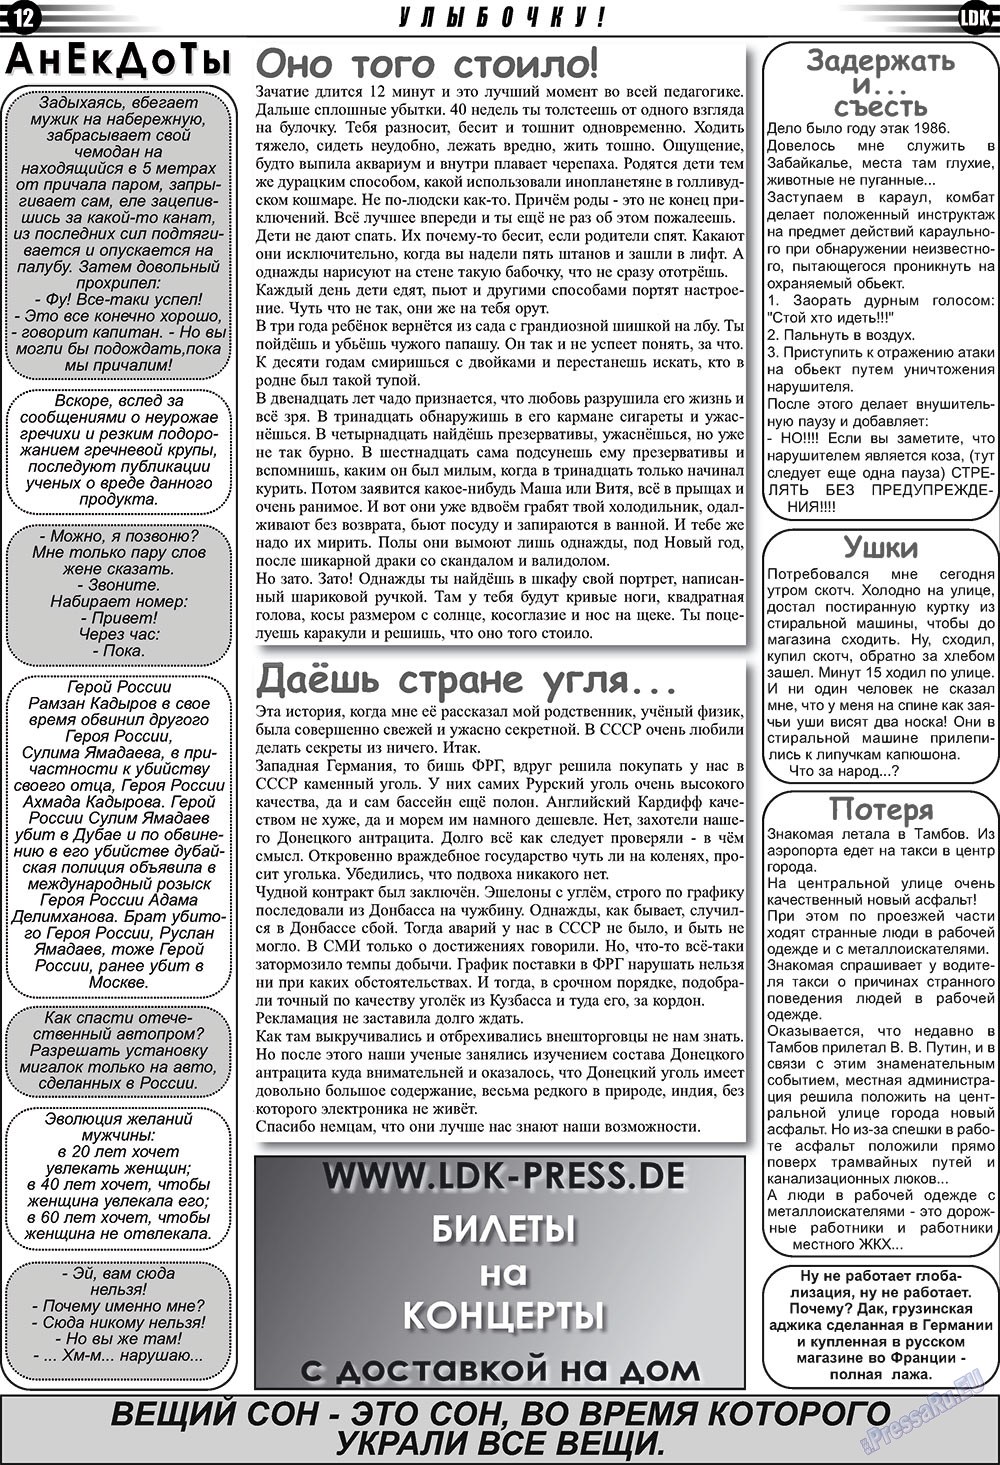 LDK по-русски (газета). 2010 год, номер 9, стр. 12